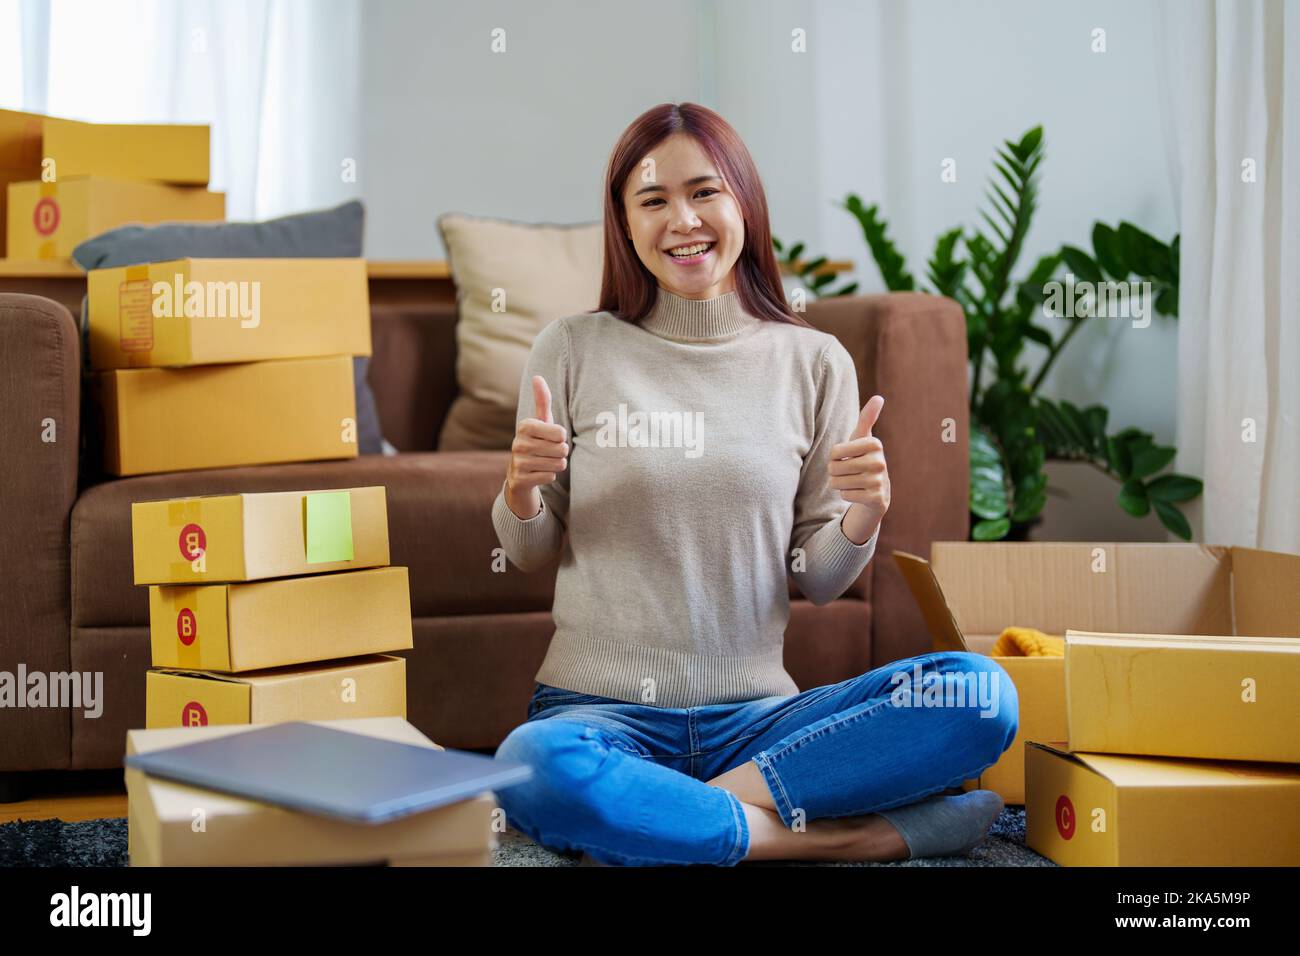 Portrait d'une petite start-up asiatique femmes entrepreneurs, propriétaires de PME montrant des visages souriants des opérations réussies d'affaires Banque D'Images